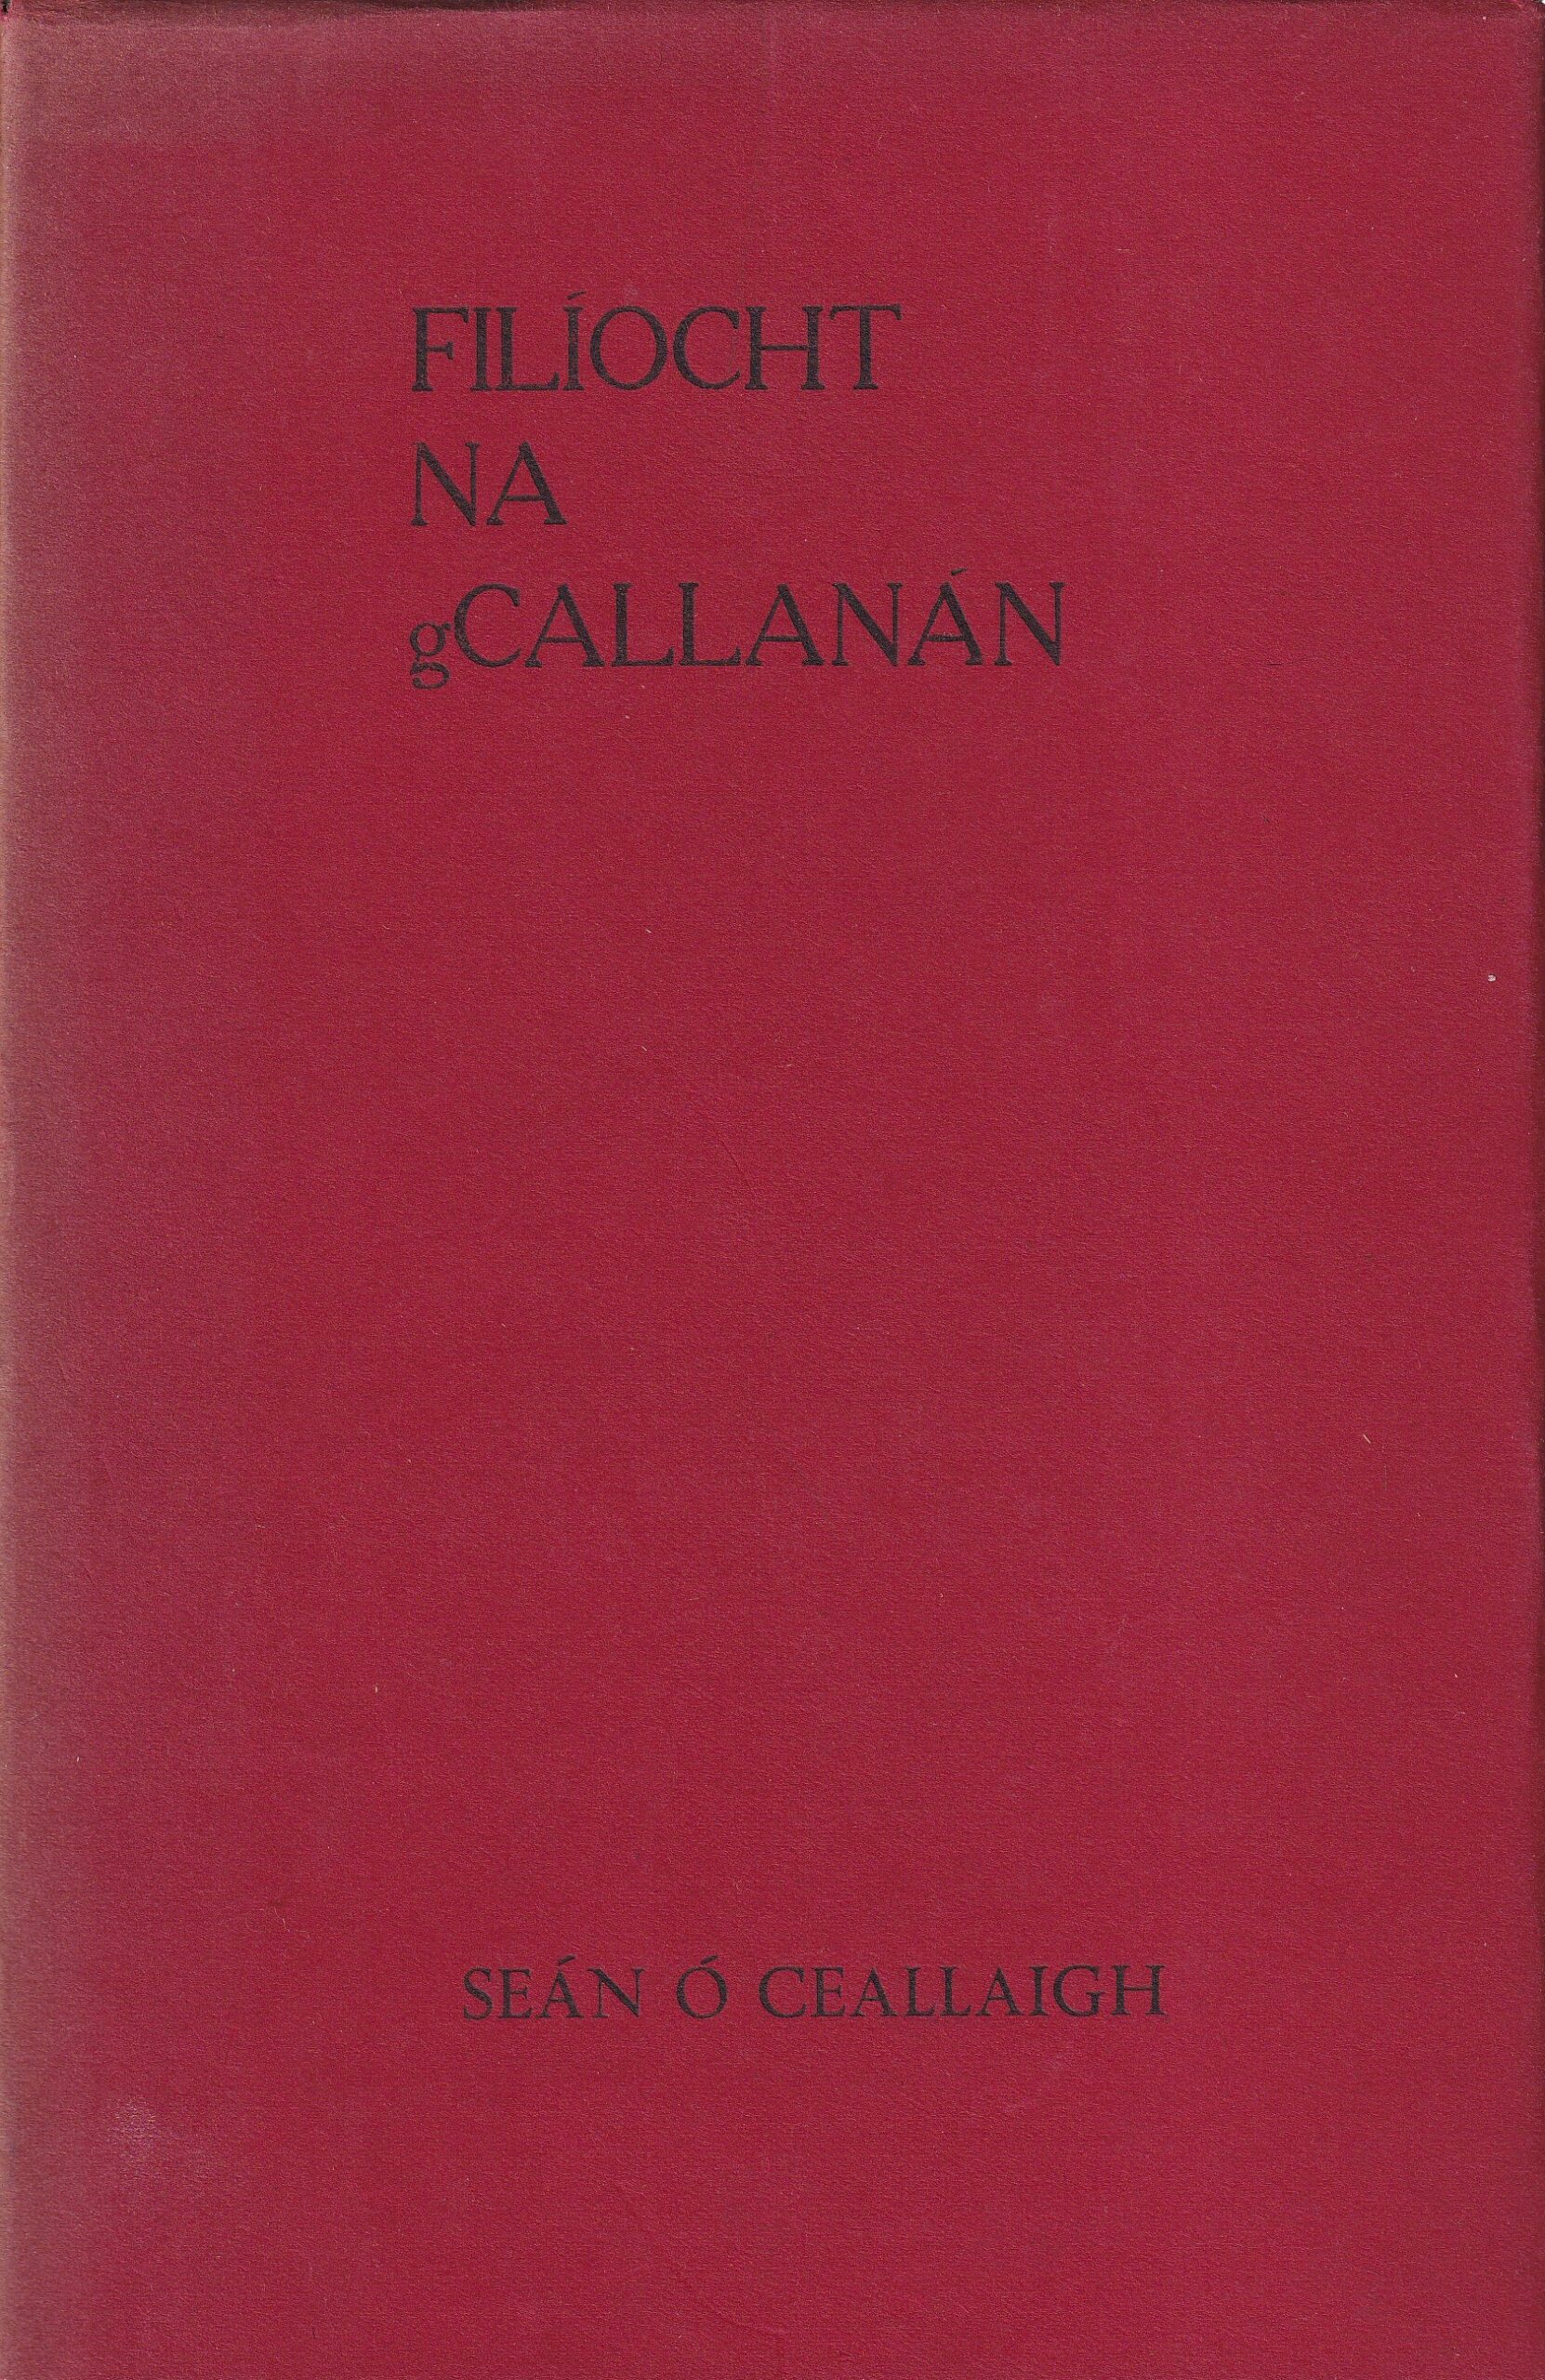 Filíocht Na gCallanán by Séan Ó Ceallaigh